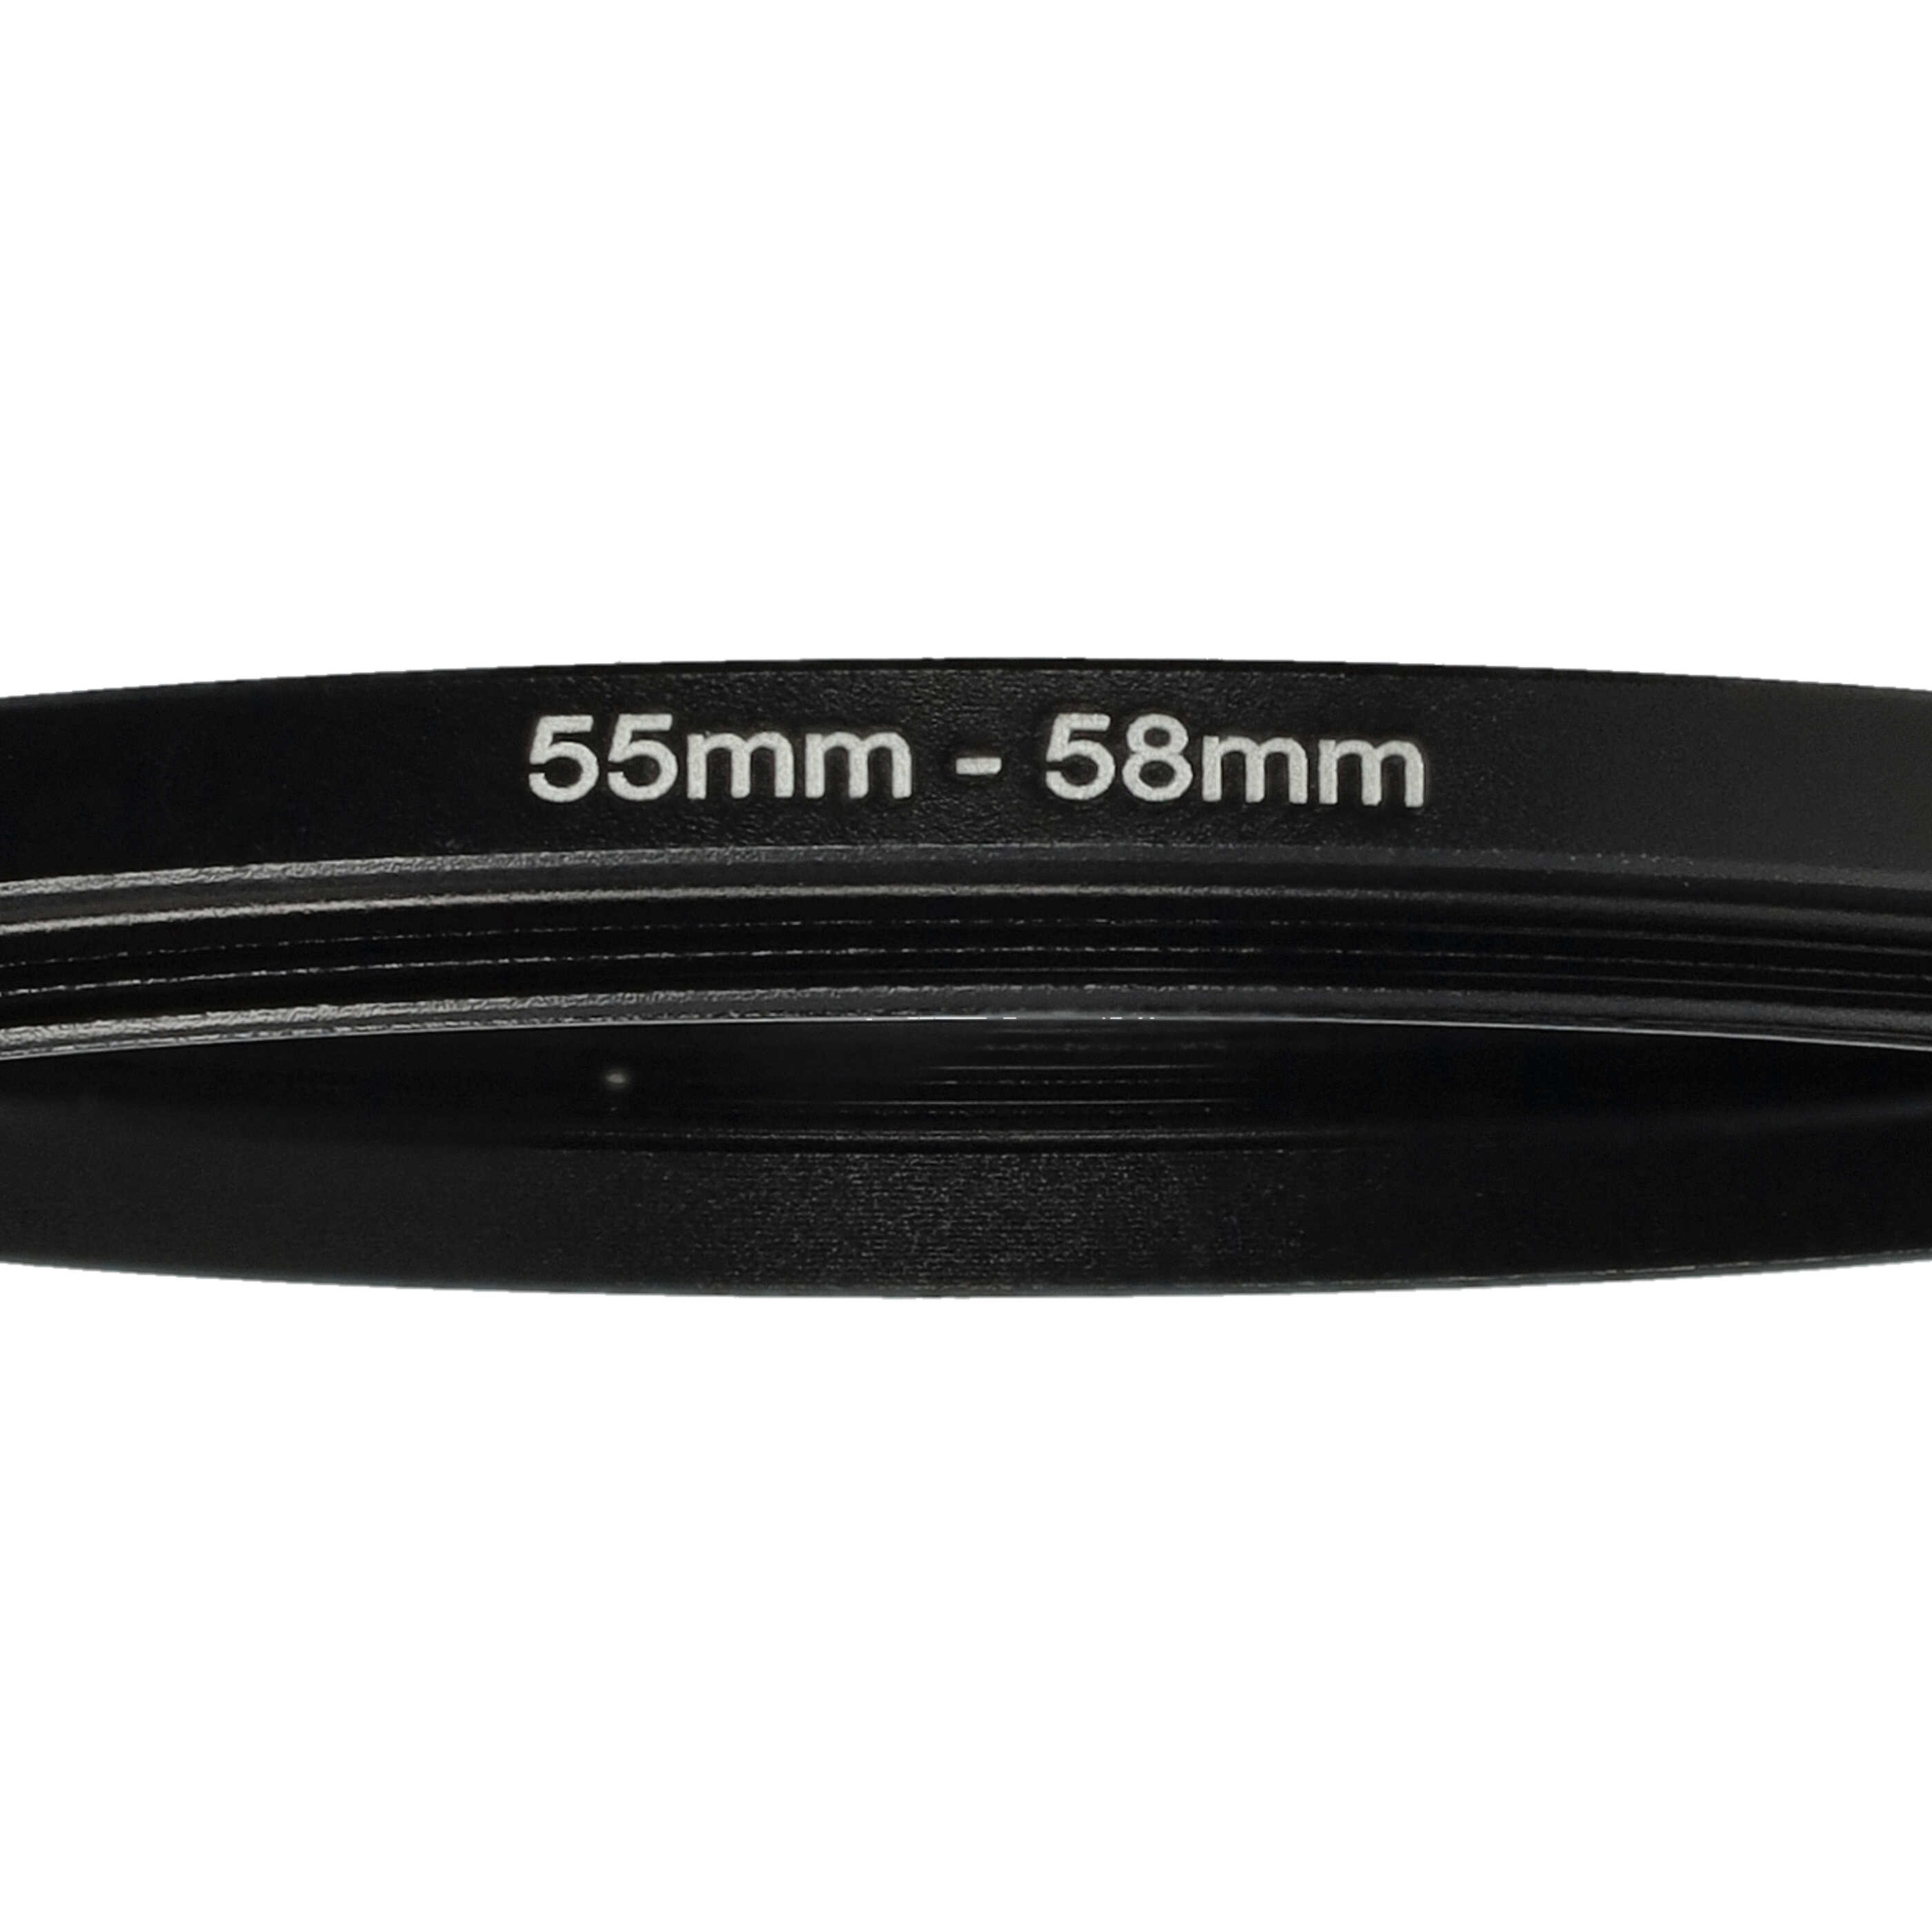 Step-Up-Ring Adapter 55 mm auf 58 mm passend für diverse Kamera-Objektive - Filteradapter